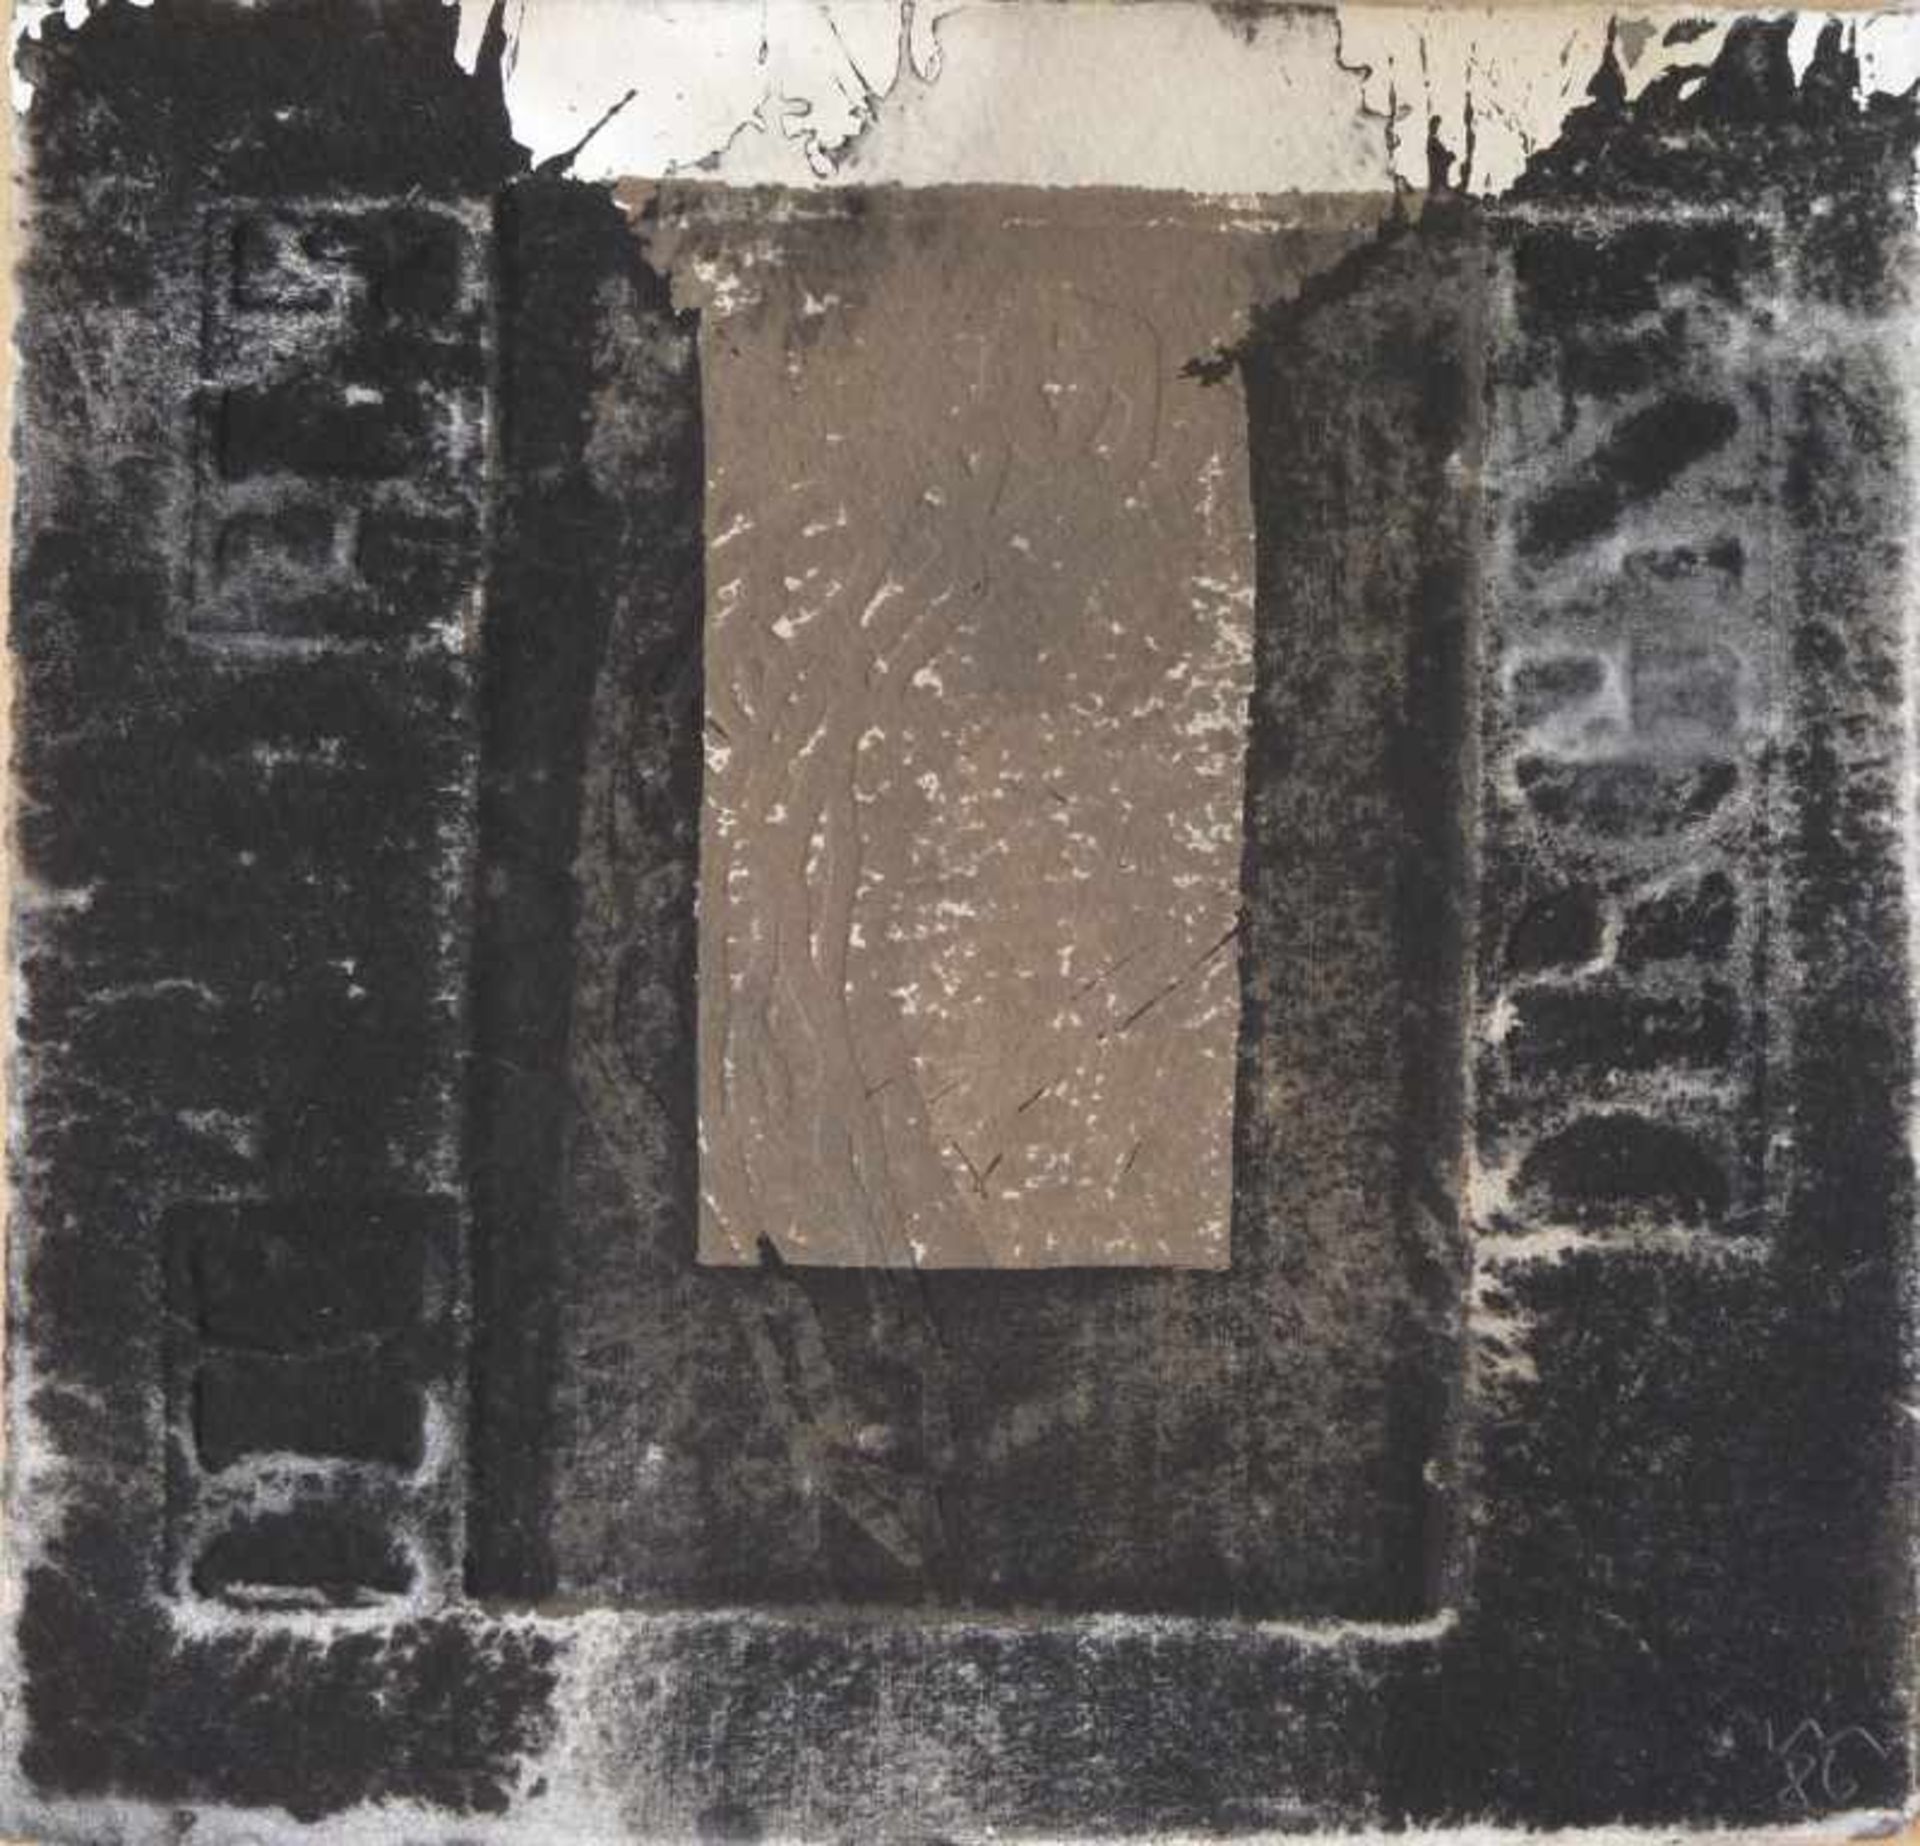 MORGNER, MICHAEL: "Angstfigur", 1986Tusche als Lavage über Prägung auf Bütten19,3 x 19,8